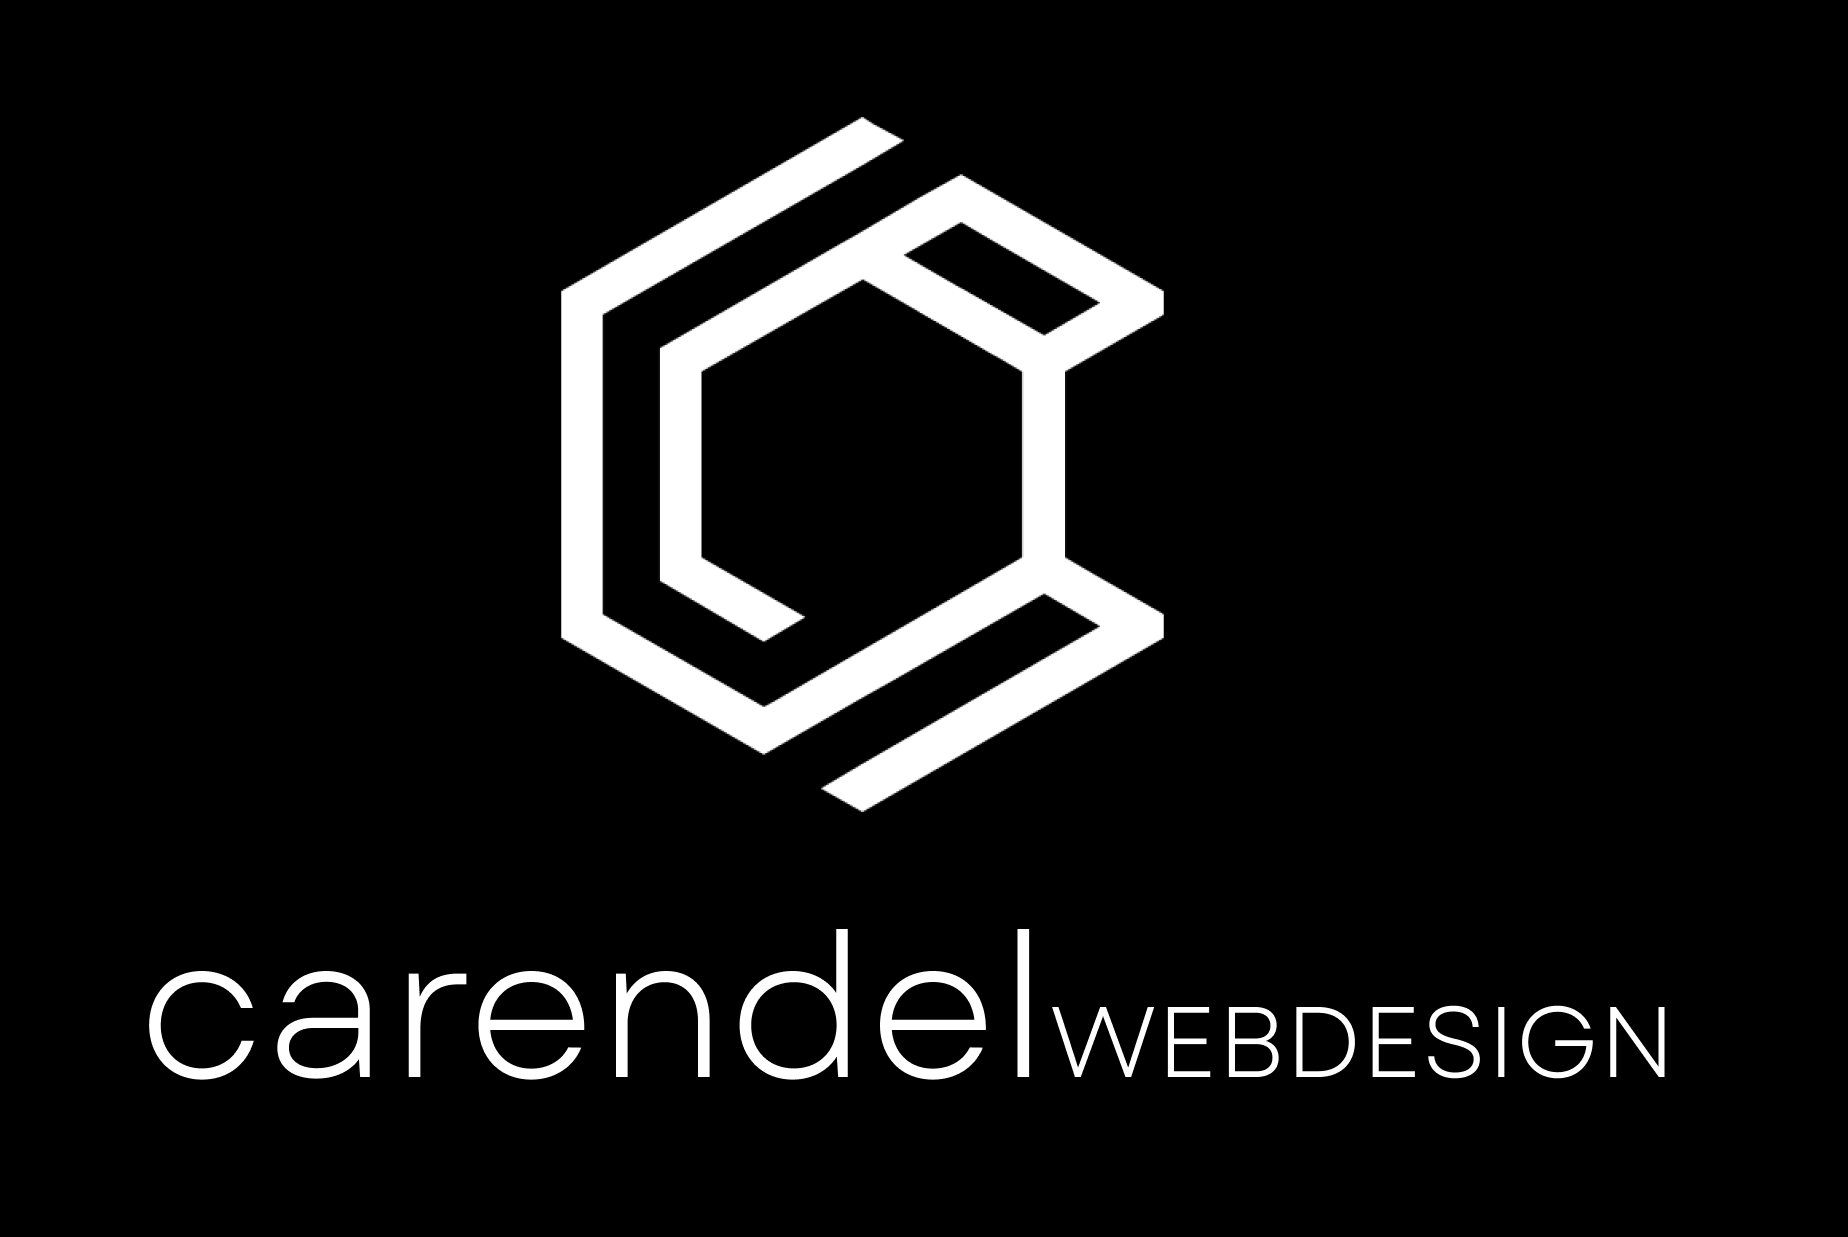 Carendel Webdesign